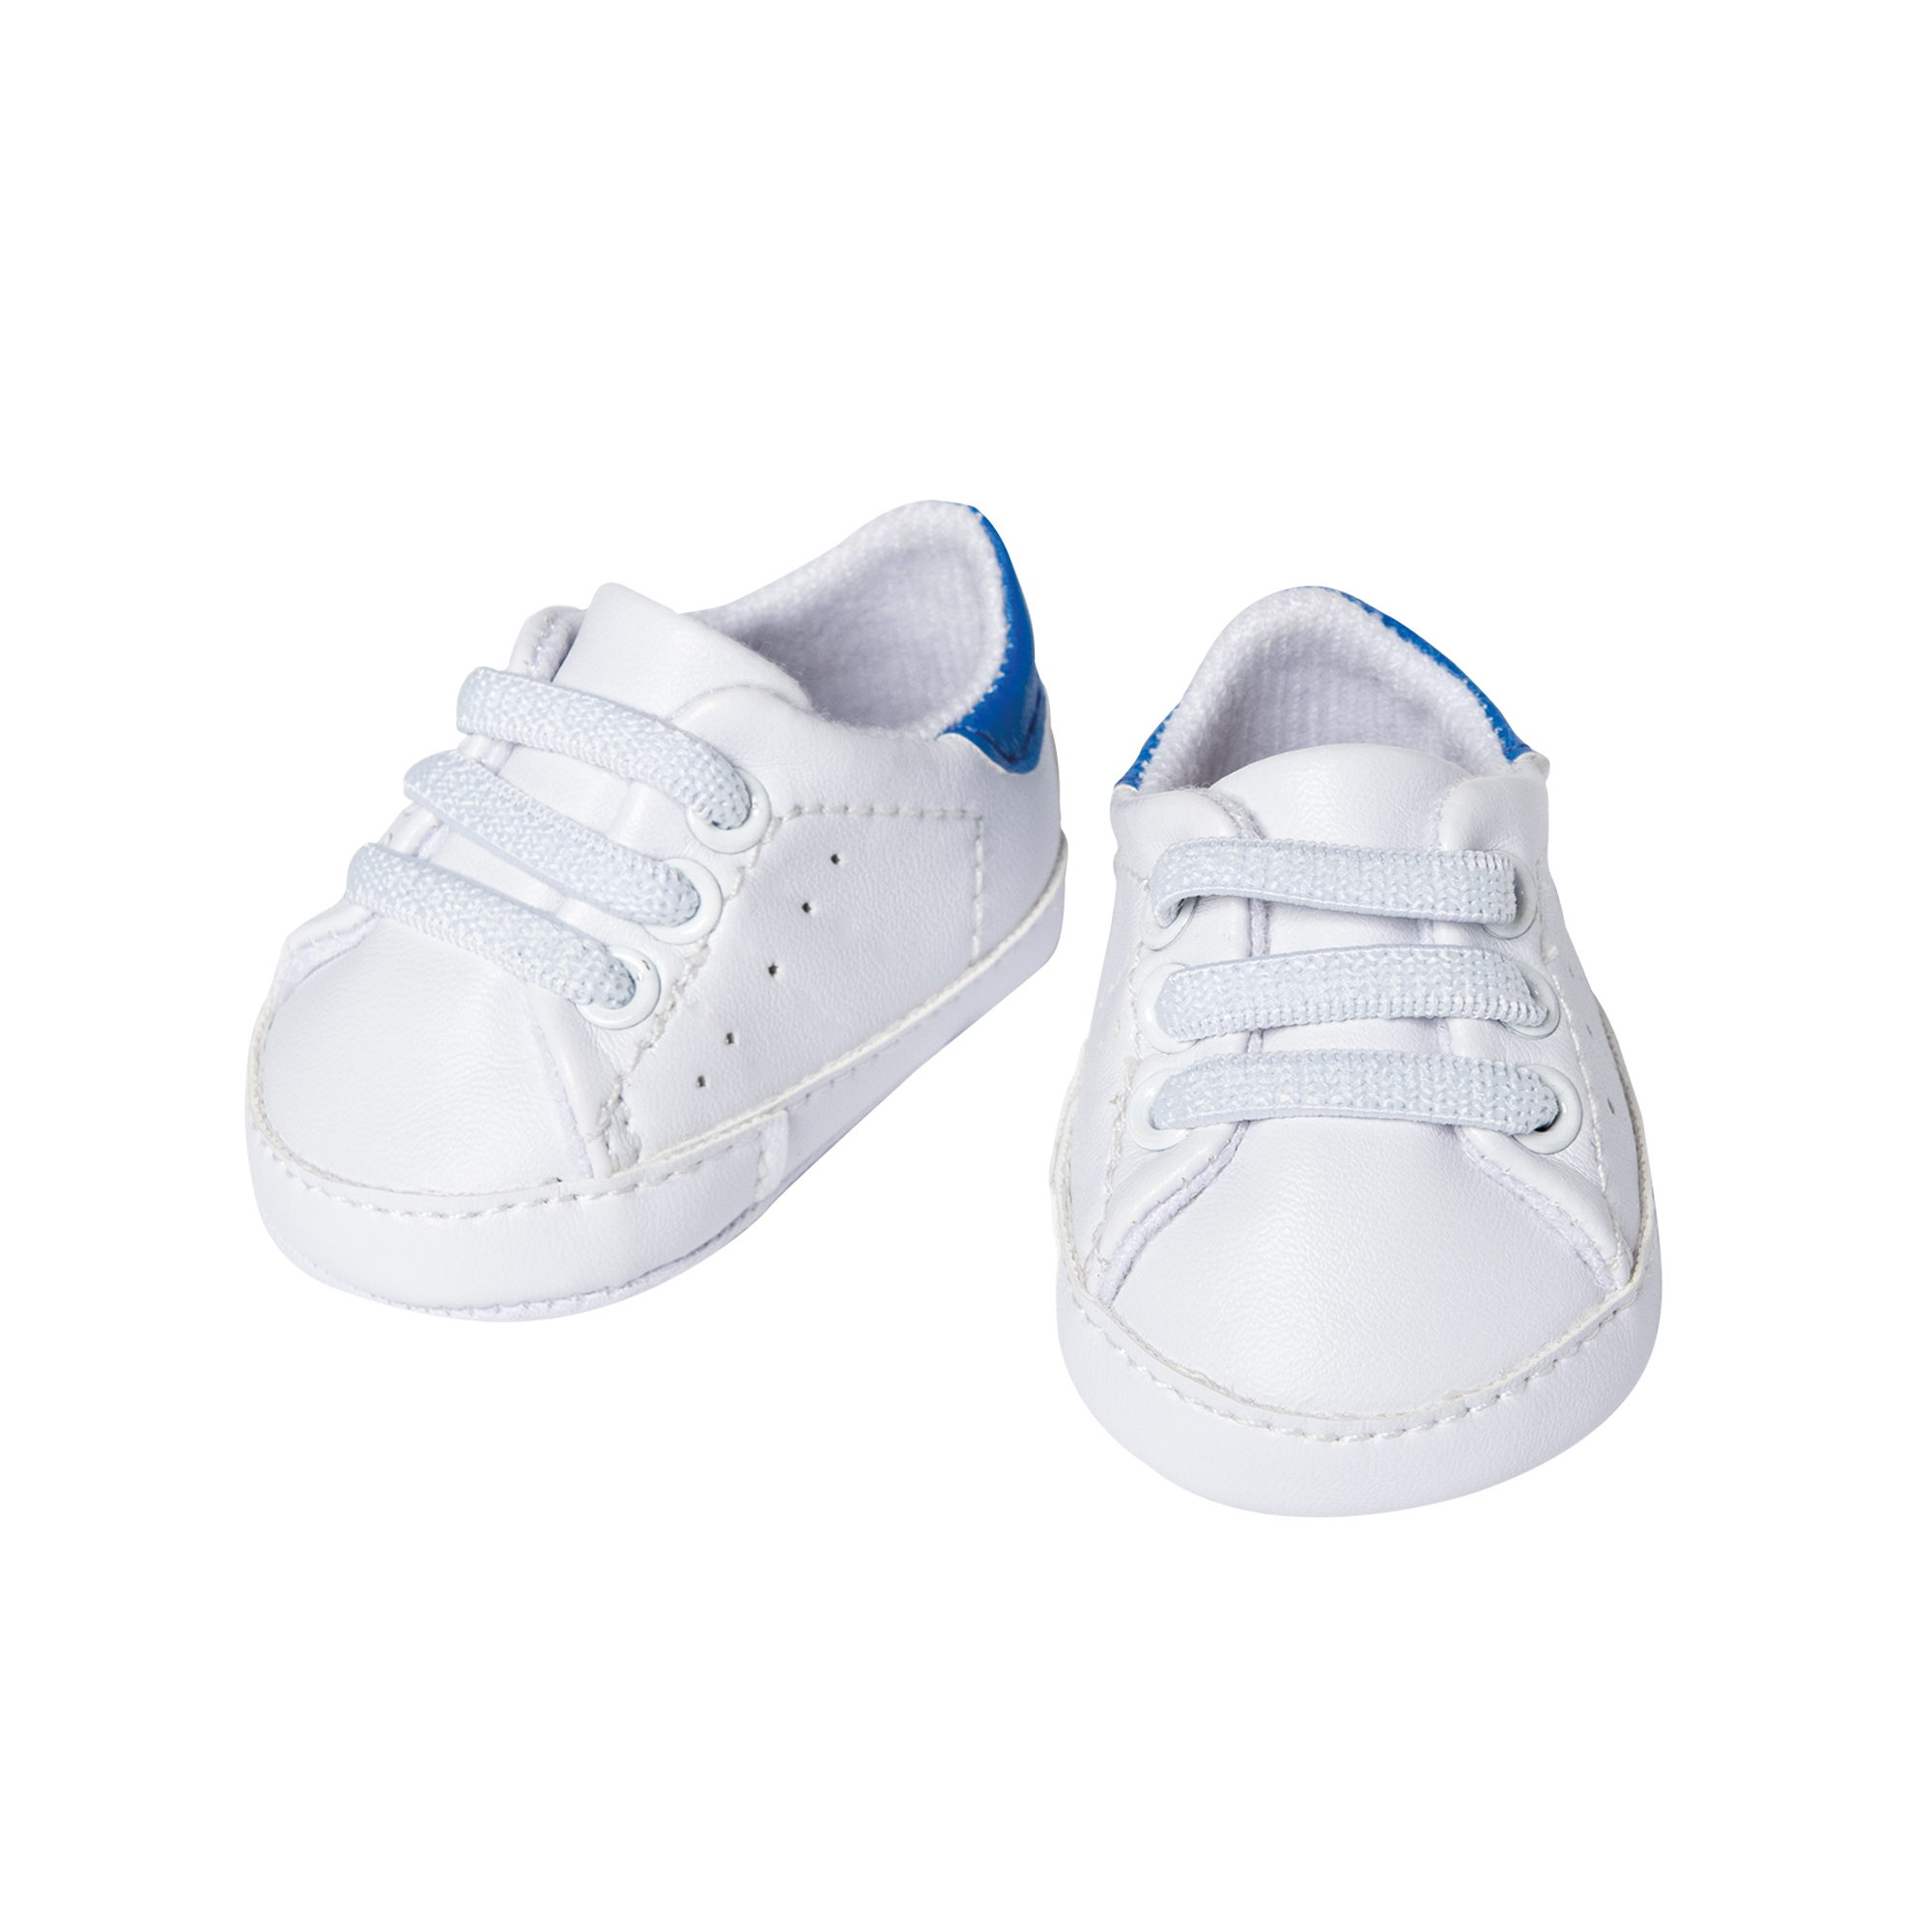 Weiße Sneakers, Gr. 30-34 cm